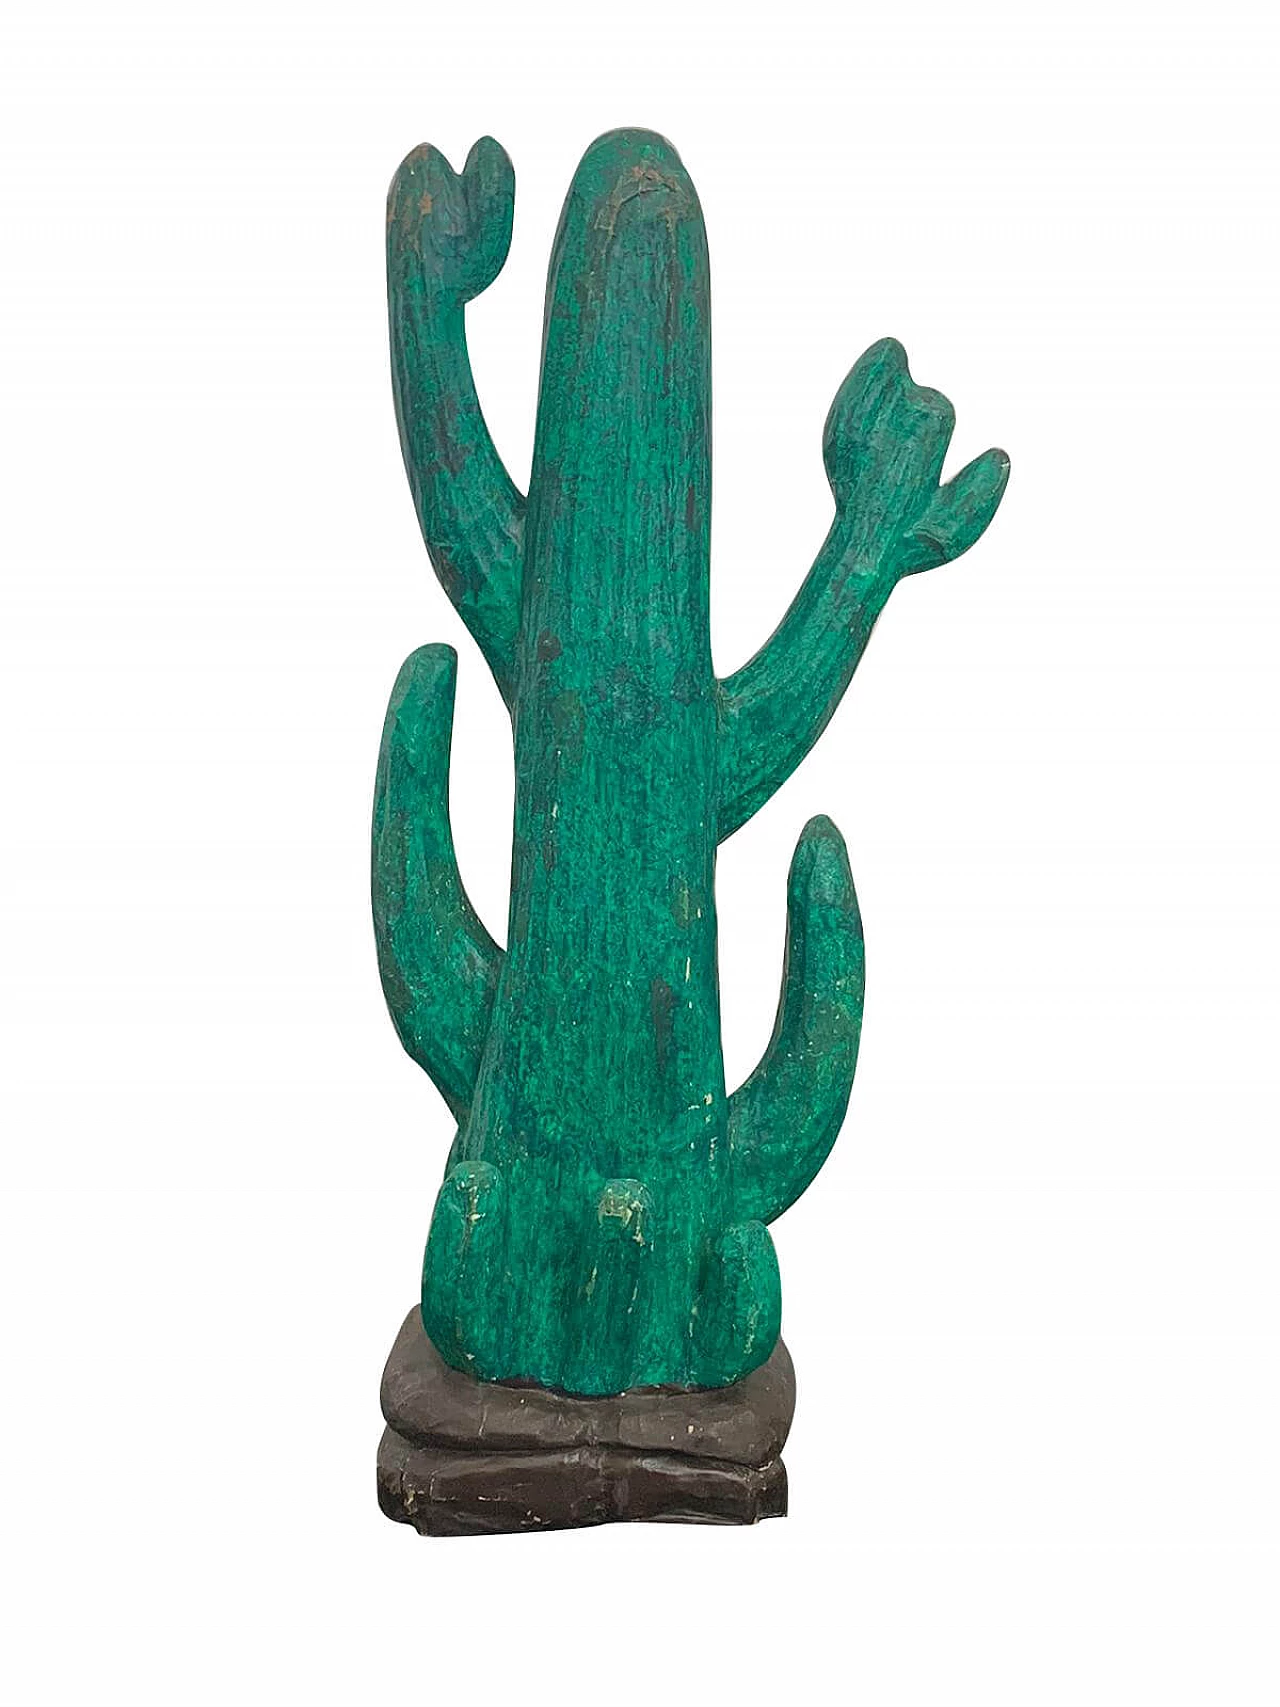 Papier mâché Cactus sculpture by Roy Roberts, 1970s 1116743